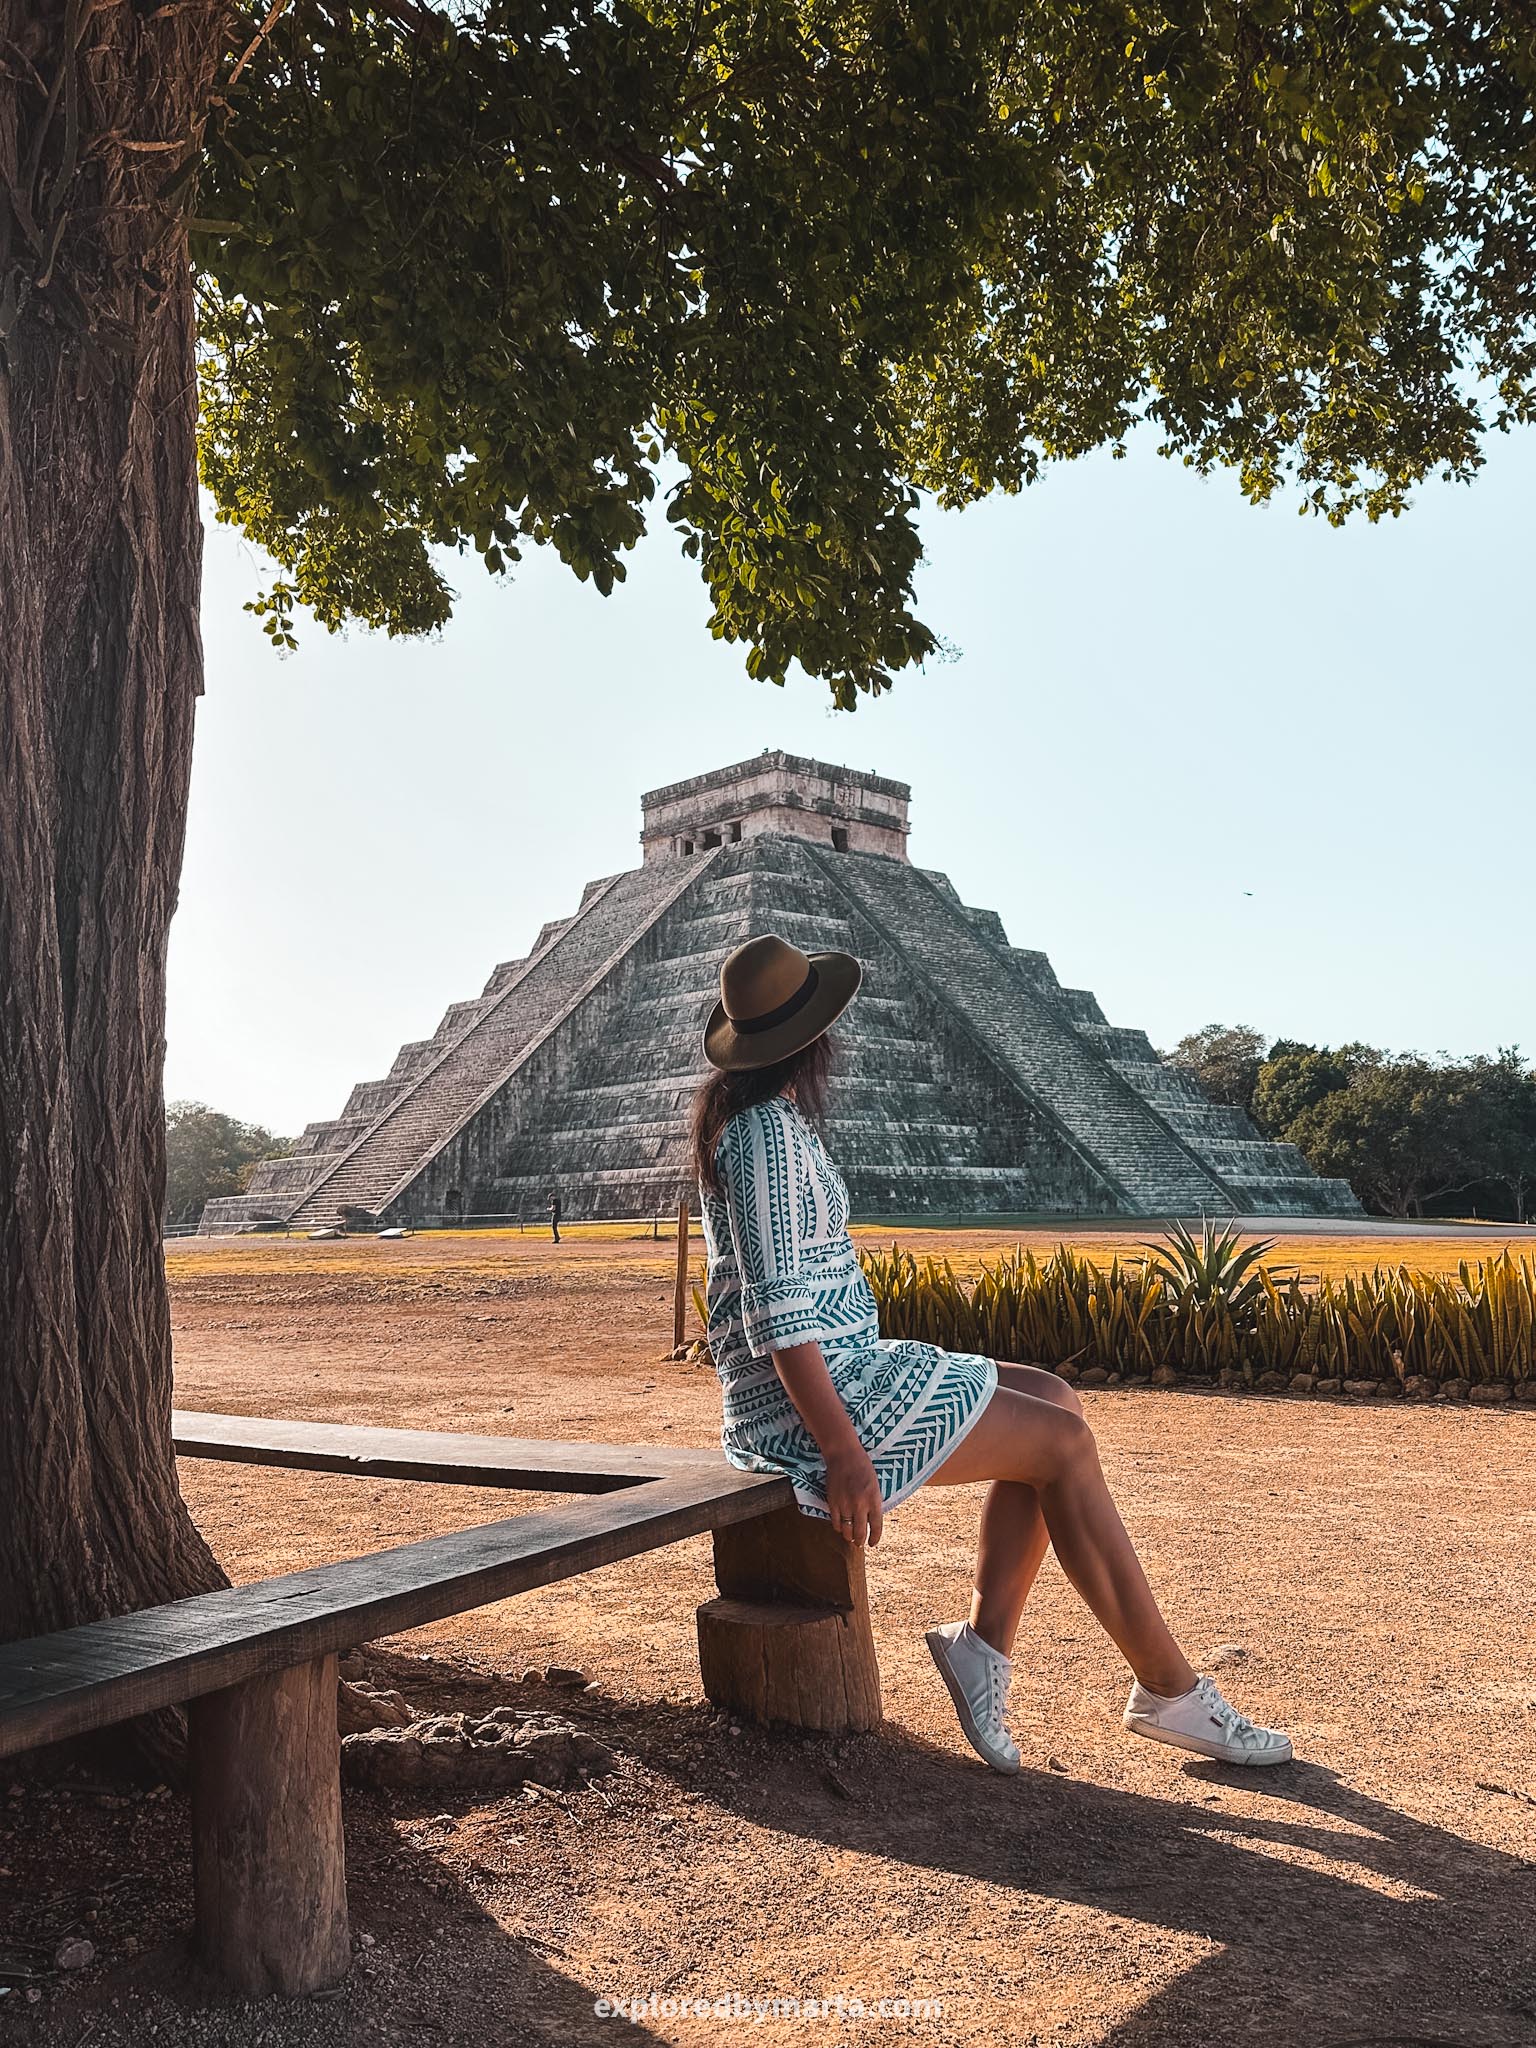 Yucatan peninsula, Mexico - Mayan pyramids and Mayan ruins around Yucatan - Chichen Itza